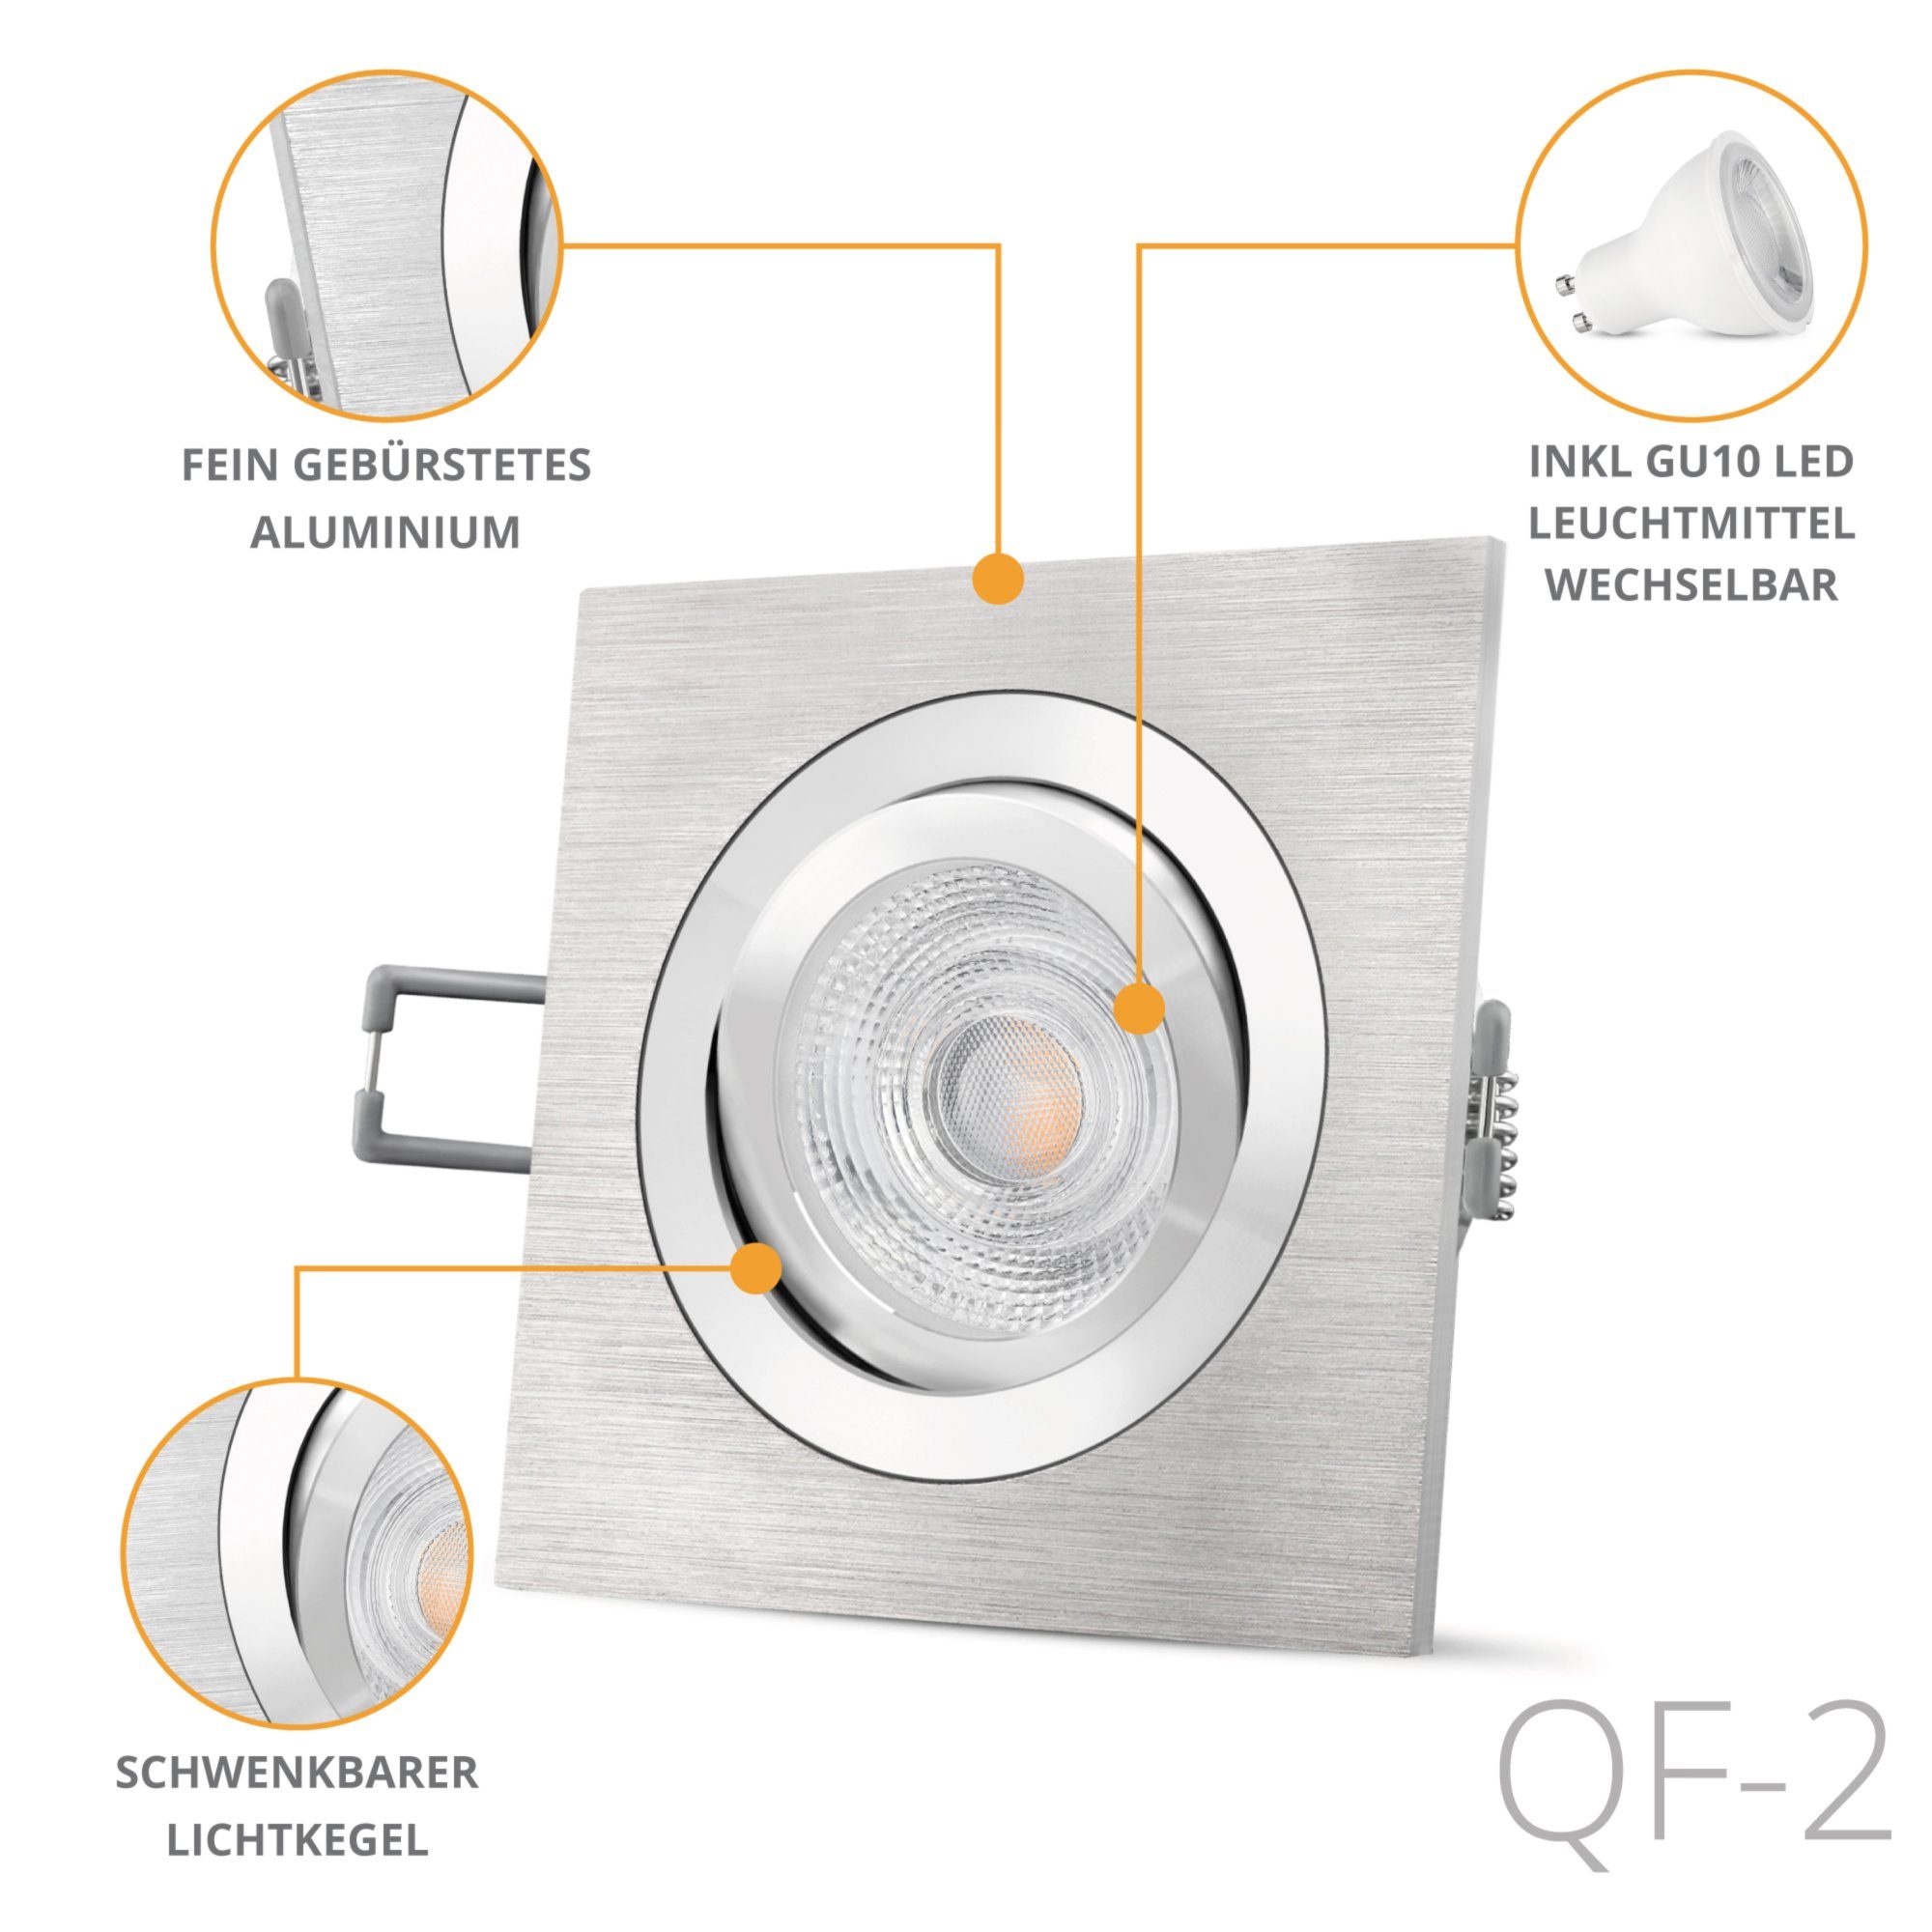 Alu Einbaustrahler quadratische gebuerstet schwenkbar, SSC-LUXon LED LED Warmweiß QF-2 Einbauleuchte